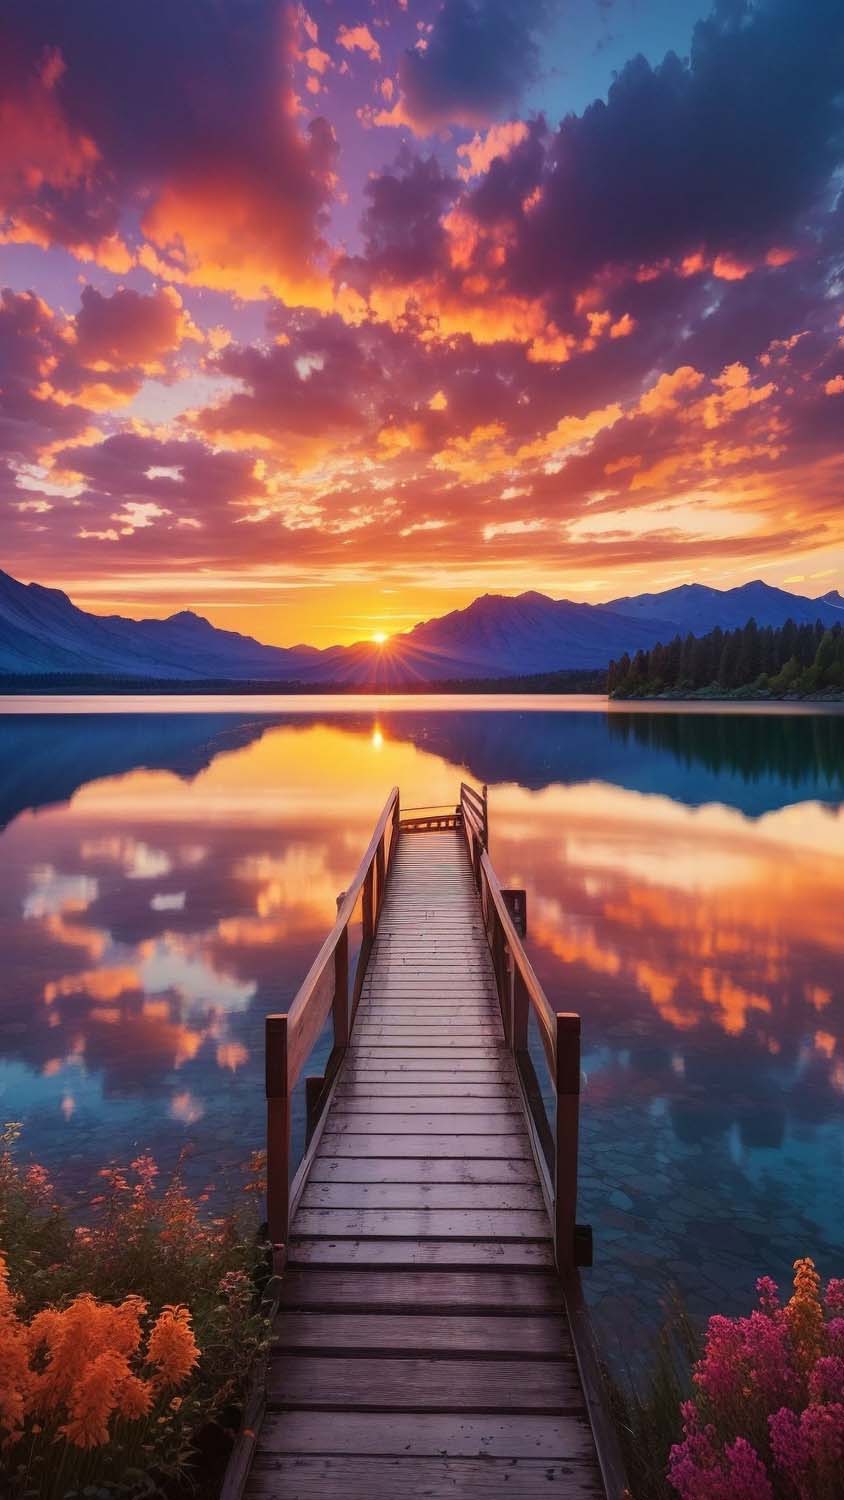 Sunset Lake Reflection Pier iPhone Wallpaper 4K